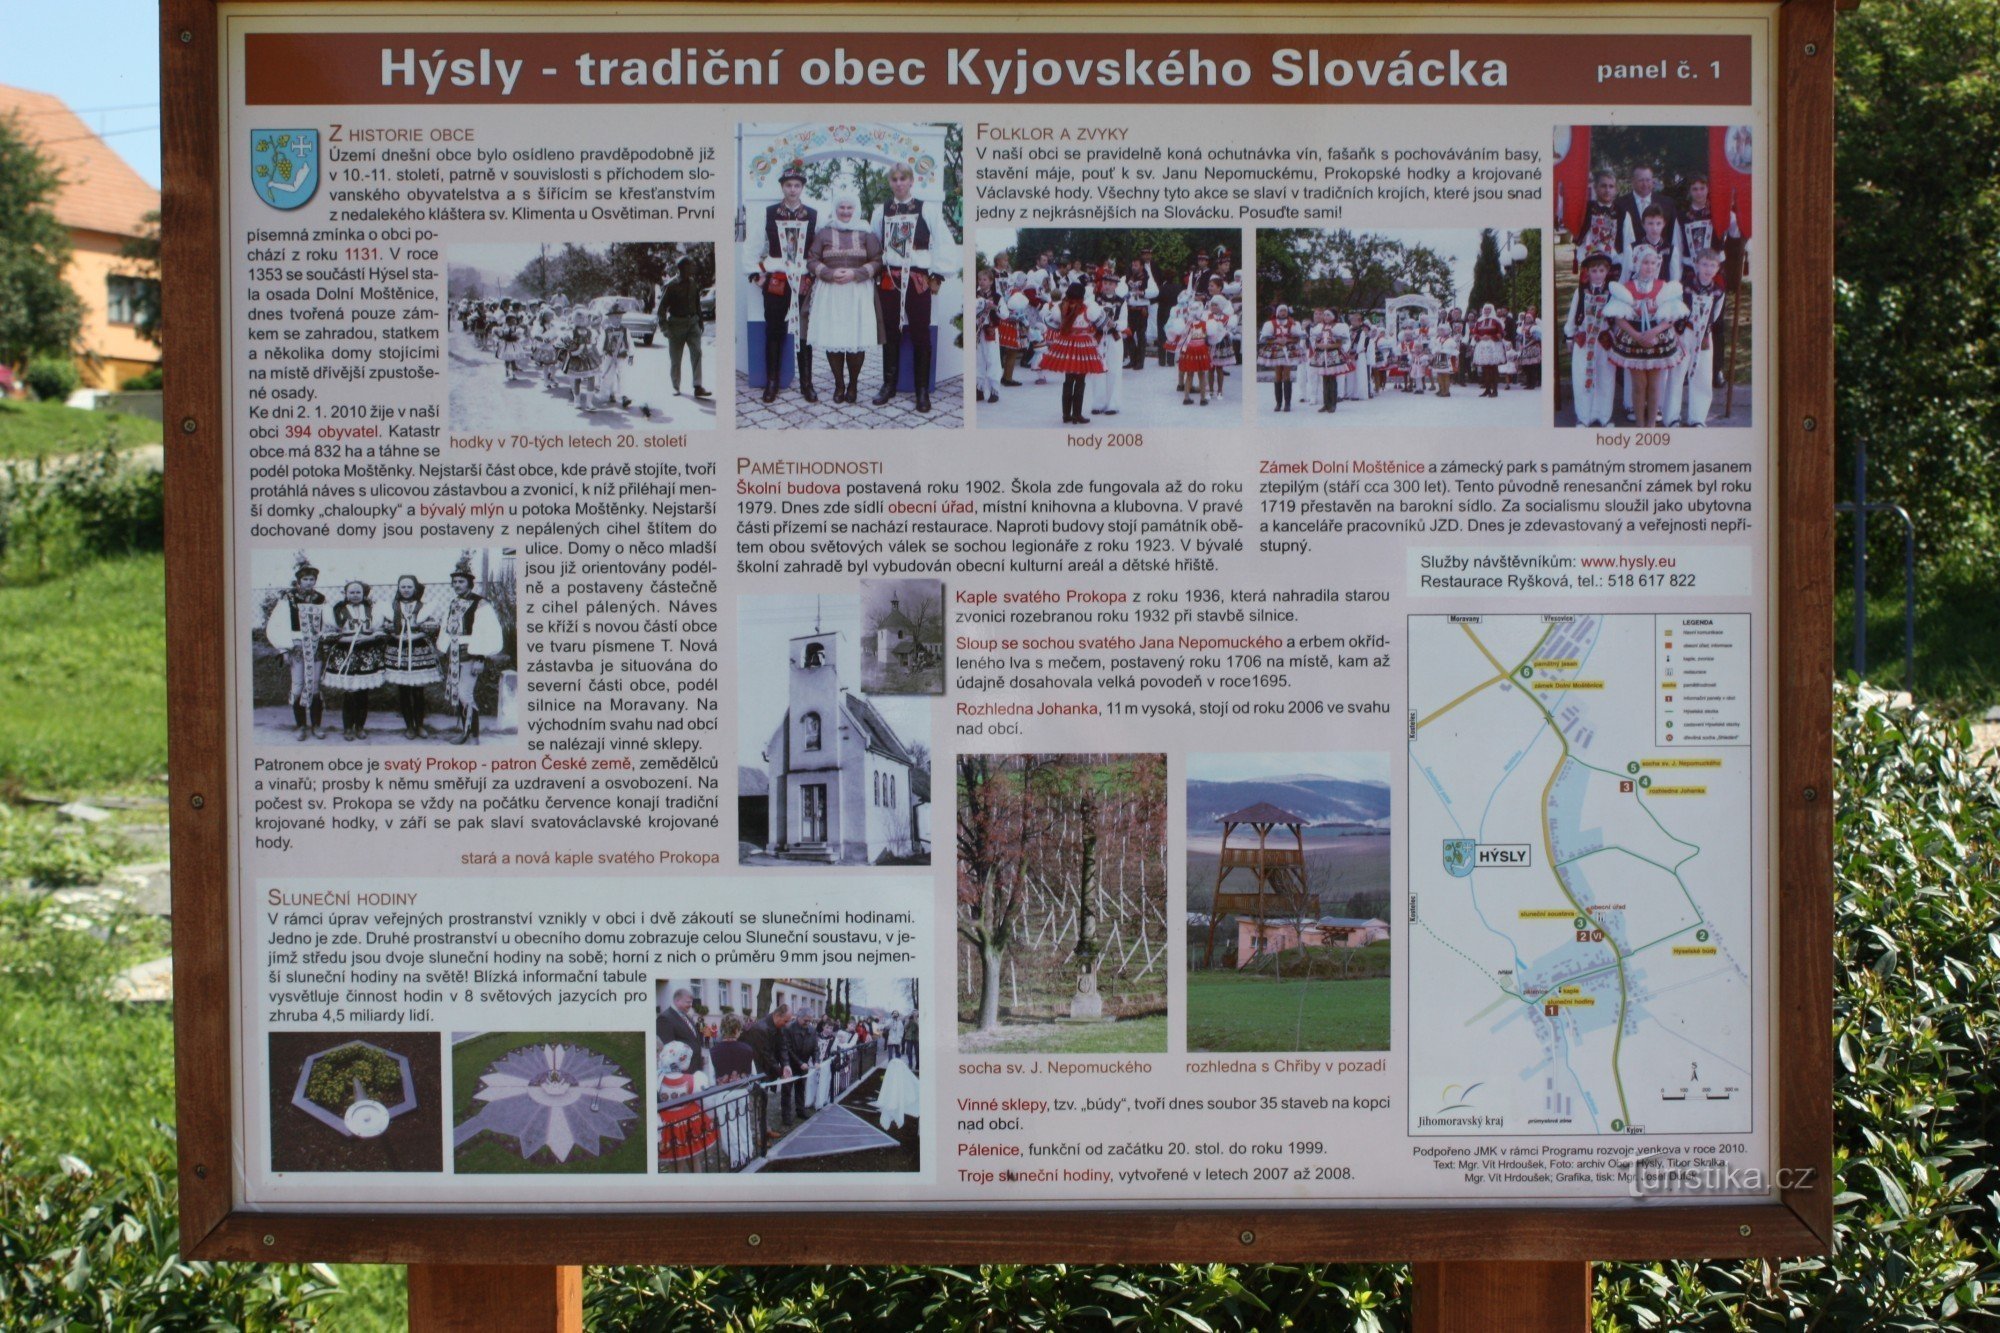 Hýsly, le village touristique de Slovácka